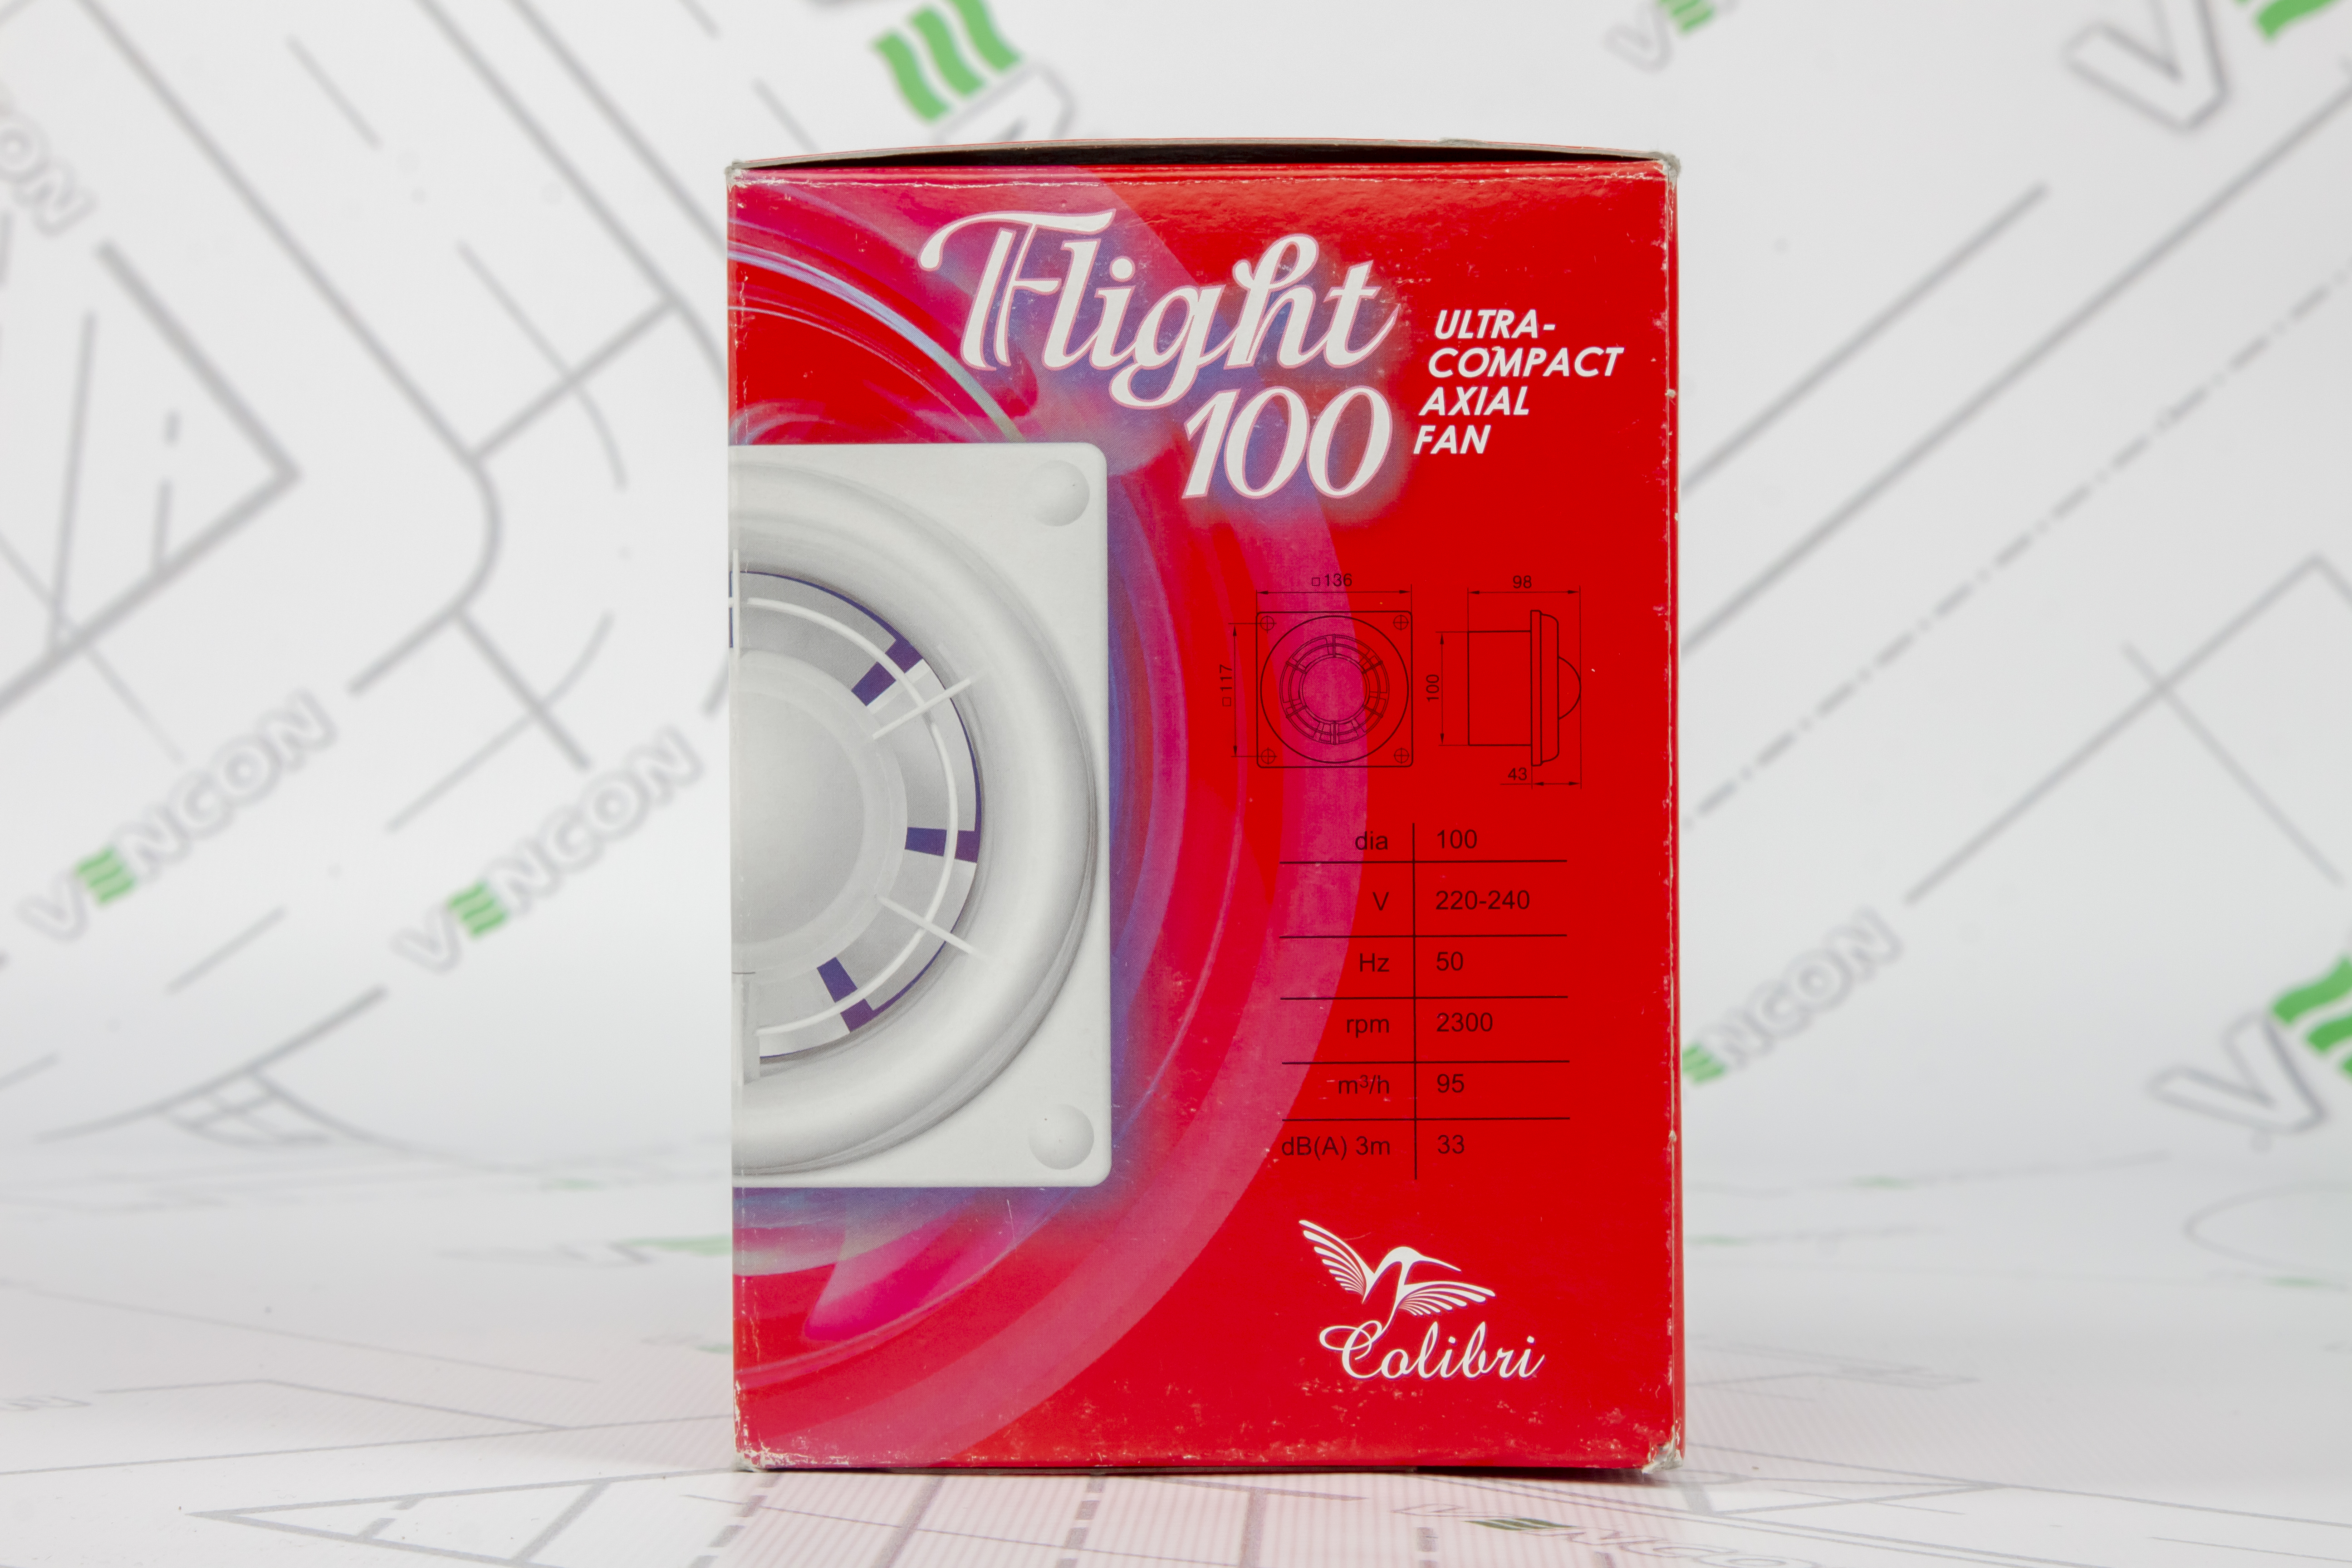 Вытяжной вентилятор Colibri Flight 100 Titan инструкция - изображение 6